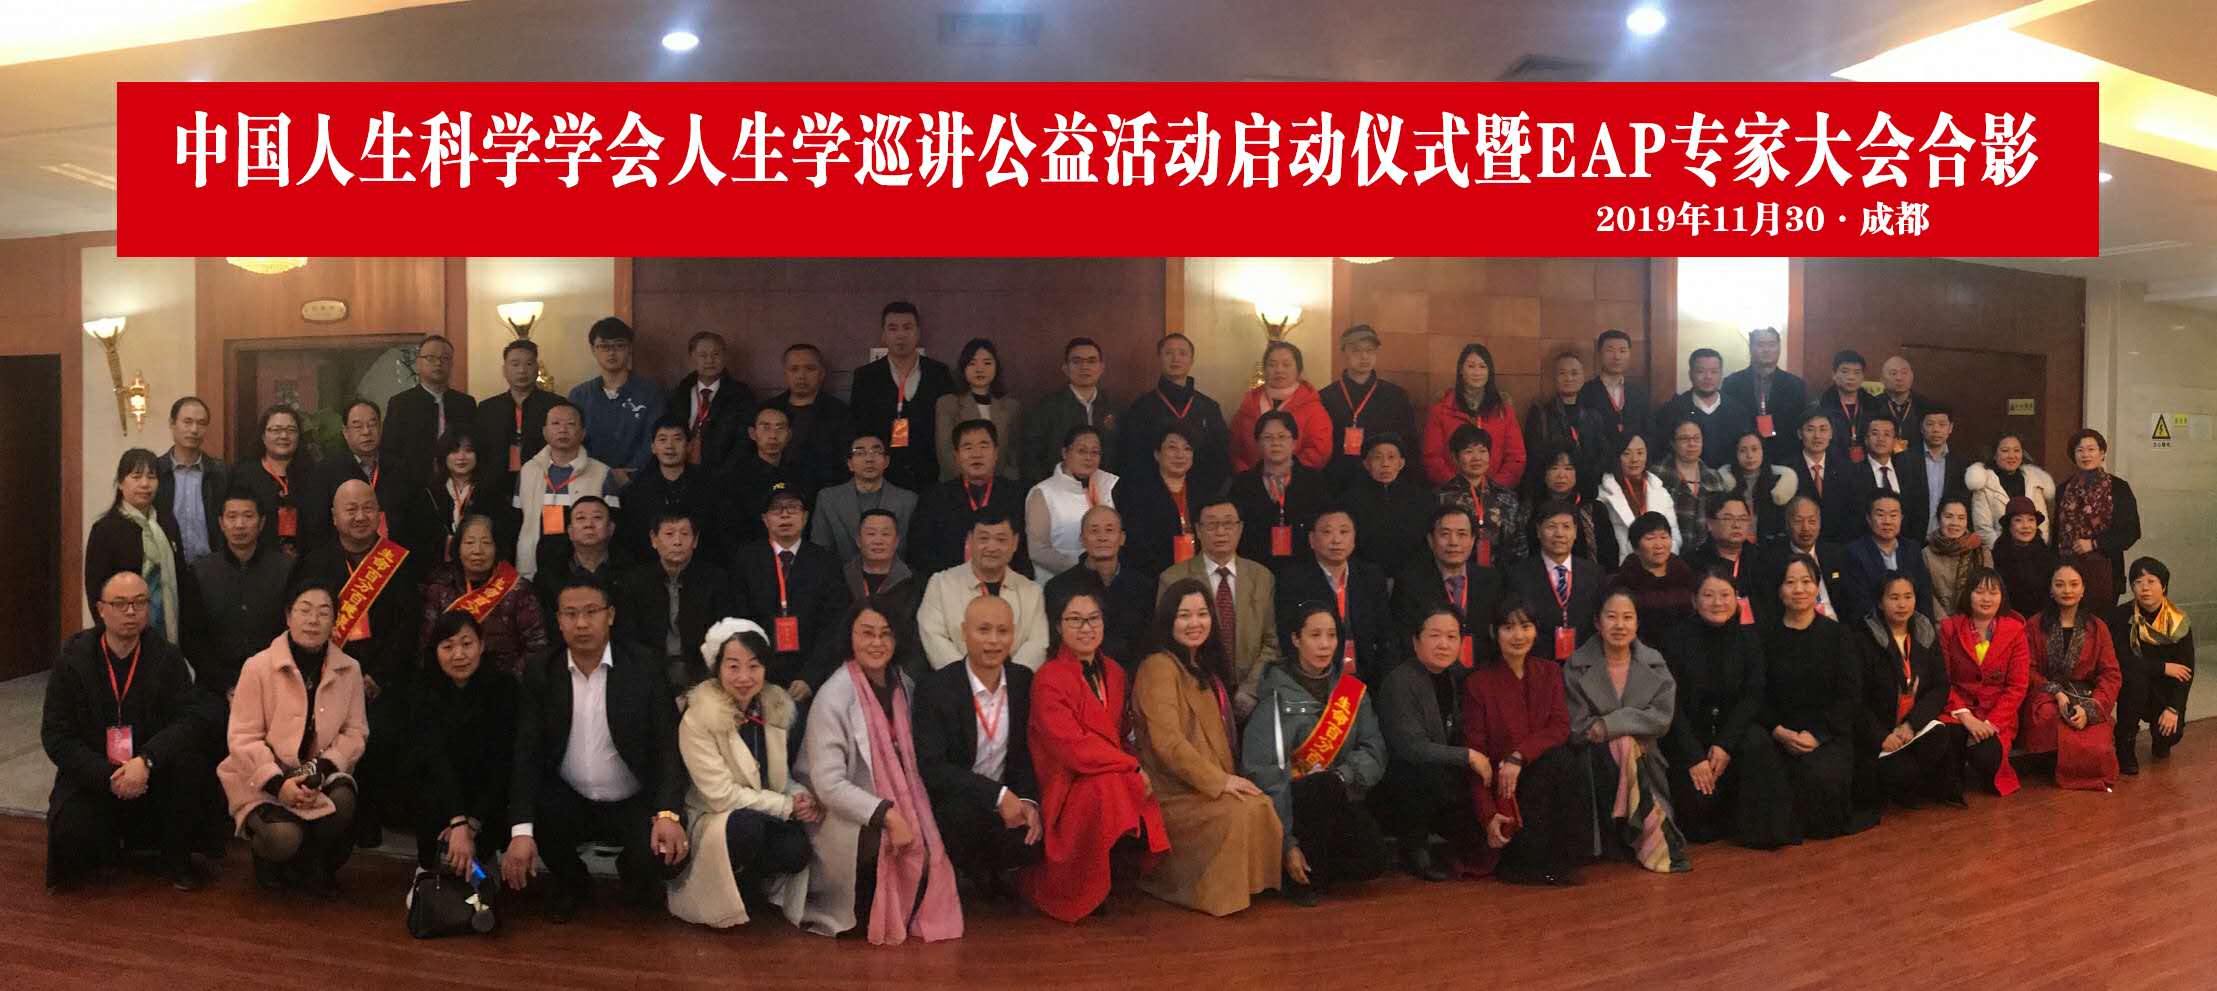 4中国人生科学学会人生学巡讲公益活动启动仪式暨EAP专家大会合影